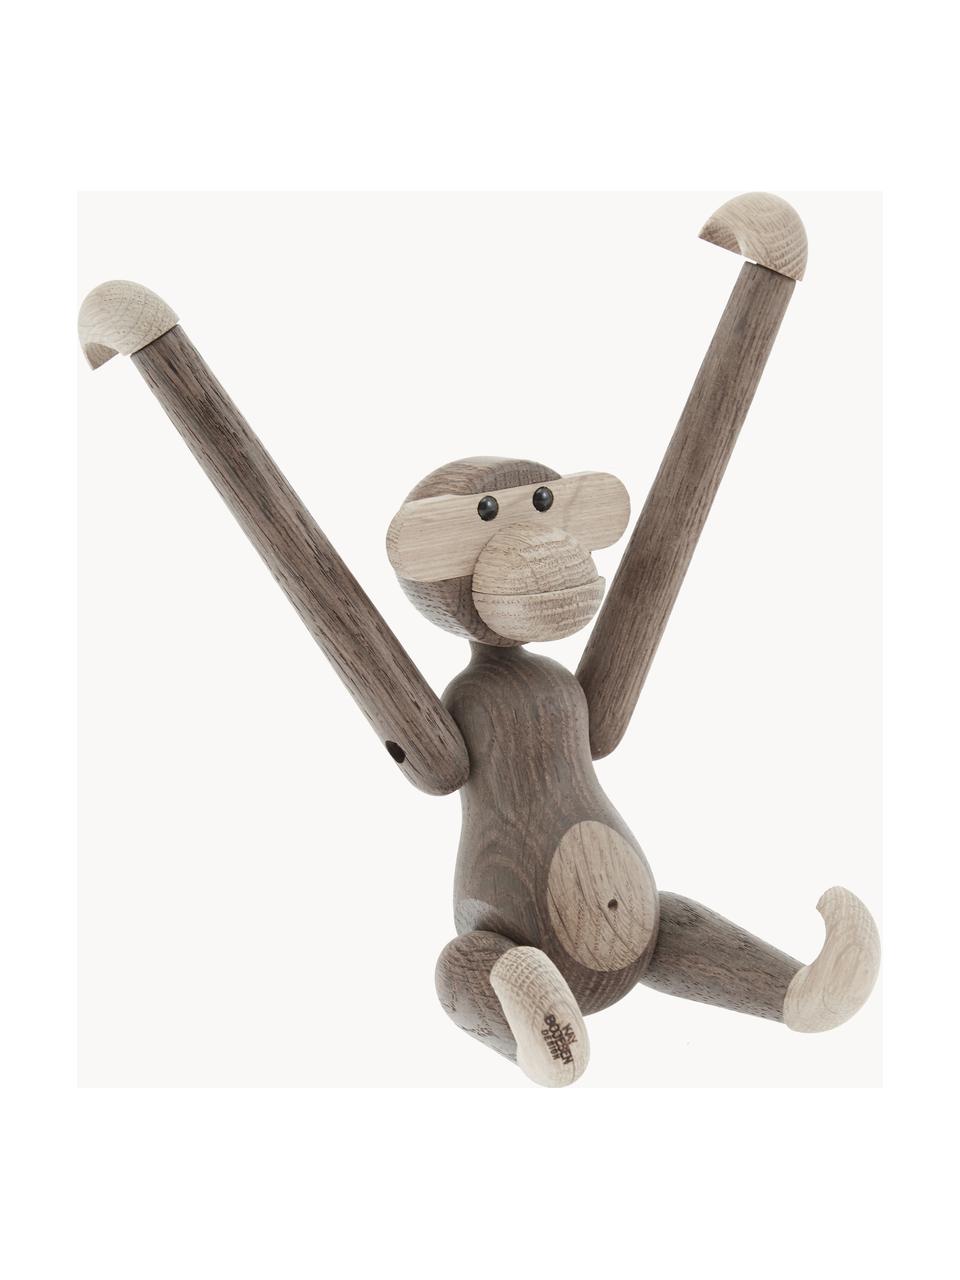 Oggetto decorativo di design in legno di quercia Monkey, alt. 19 cm, Legno di quercia verniciato certificato FSC, Legno di quercia, Larg. 20 x Alt. 19 cm